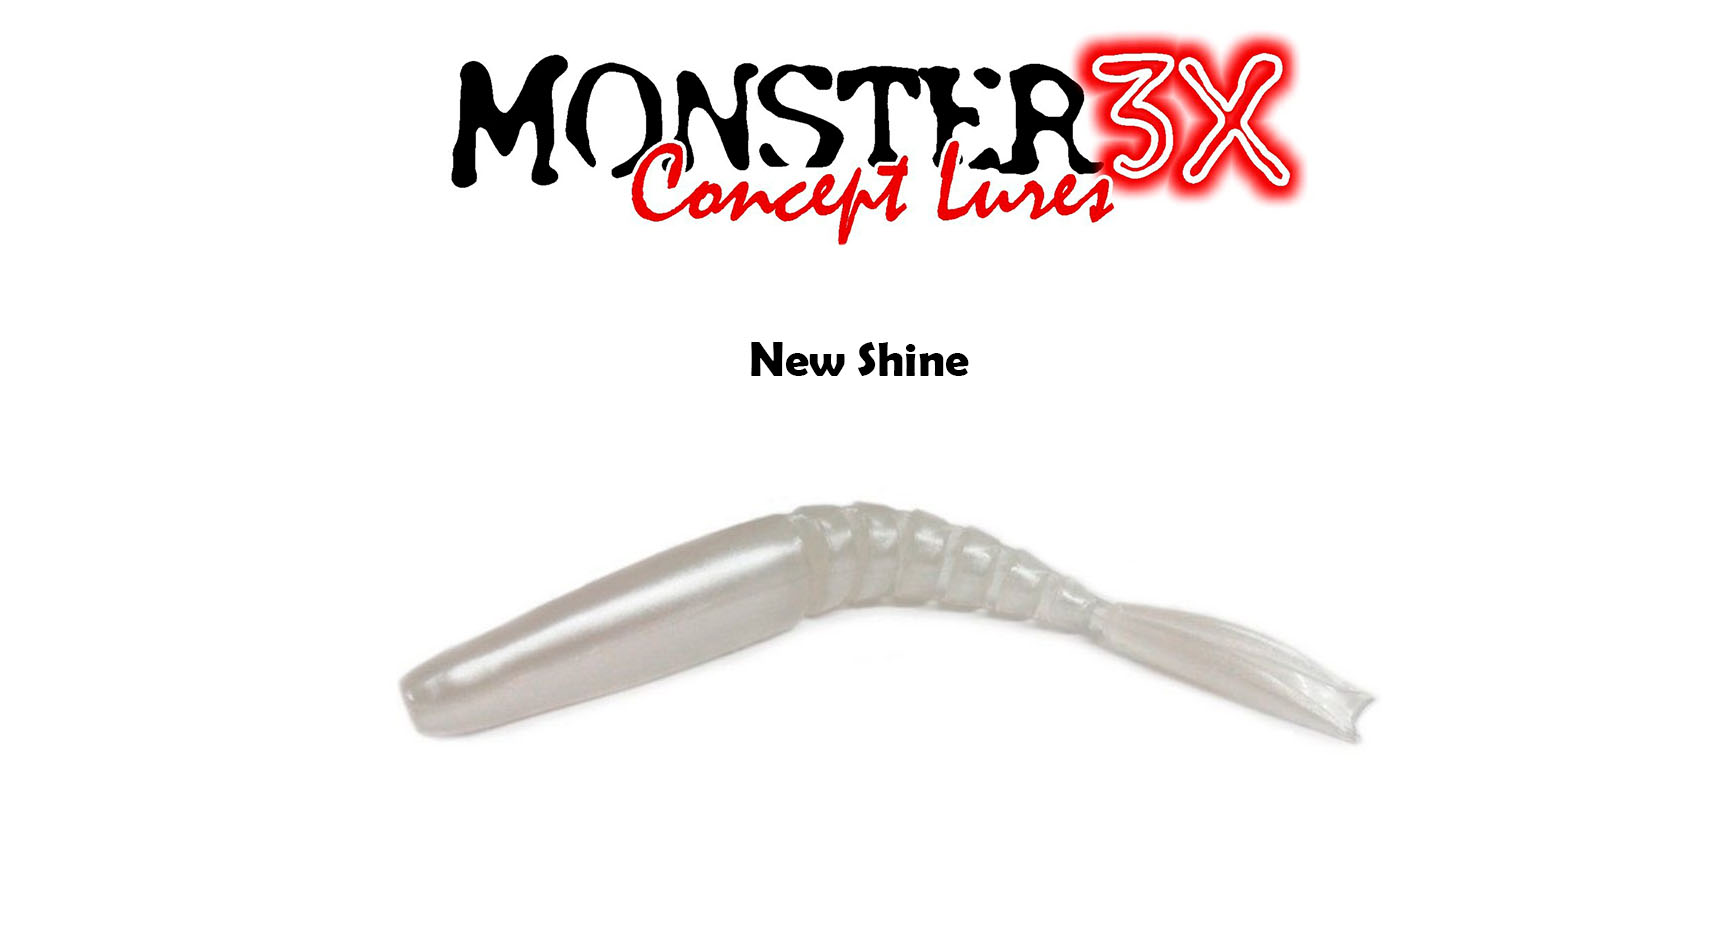 Isca Artificial Soft Monster 3X X-Swim (9 cm) 5 Peças - Várias Cores